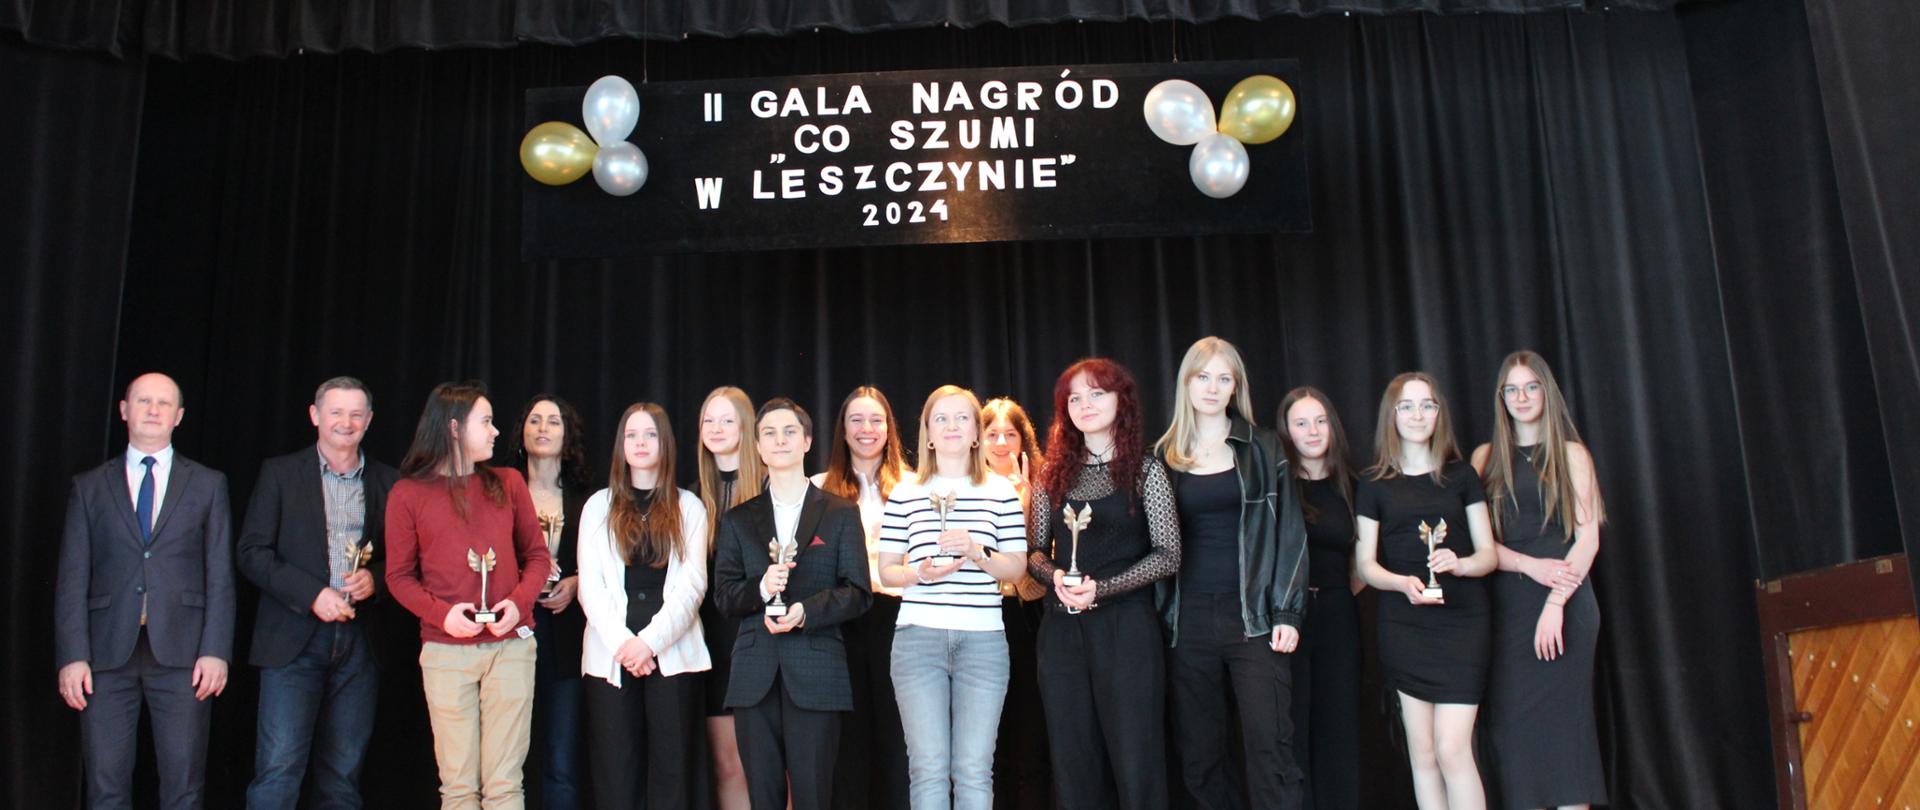 II Gala Nagród “Co Szumi W Leszczynie” - 11.04.2024 r. 